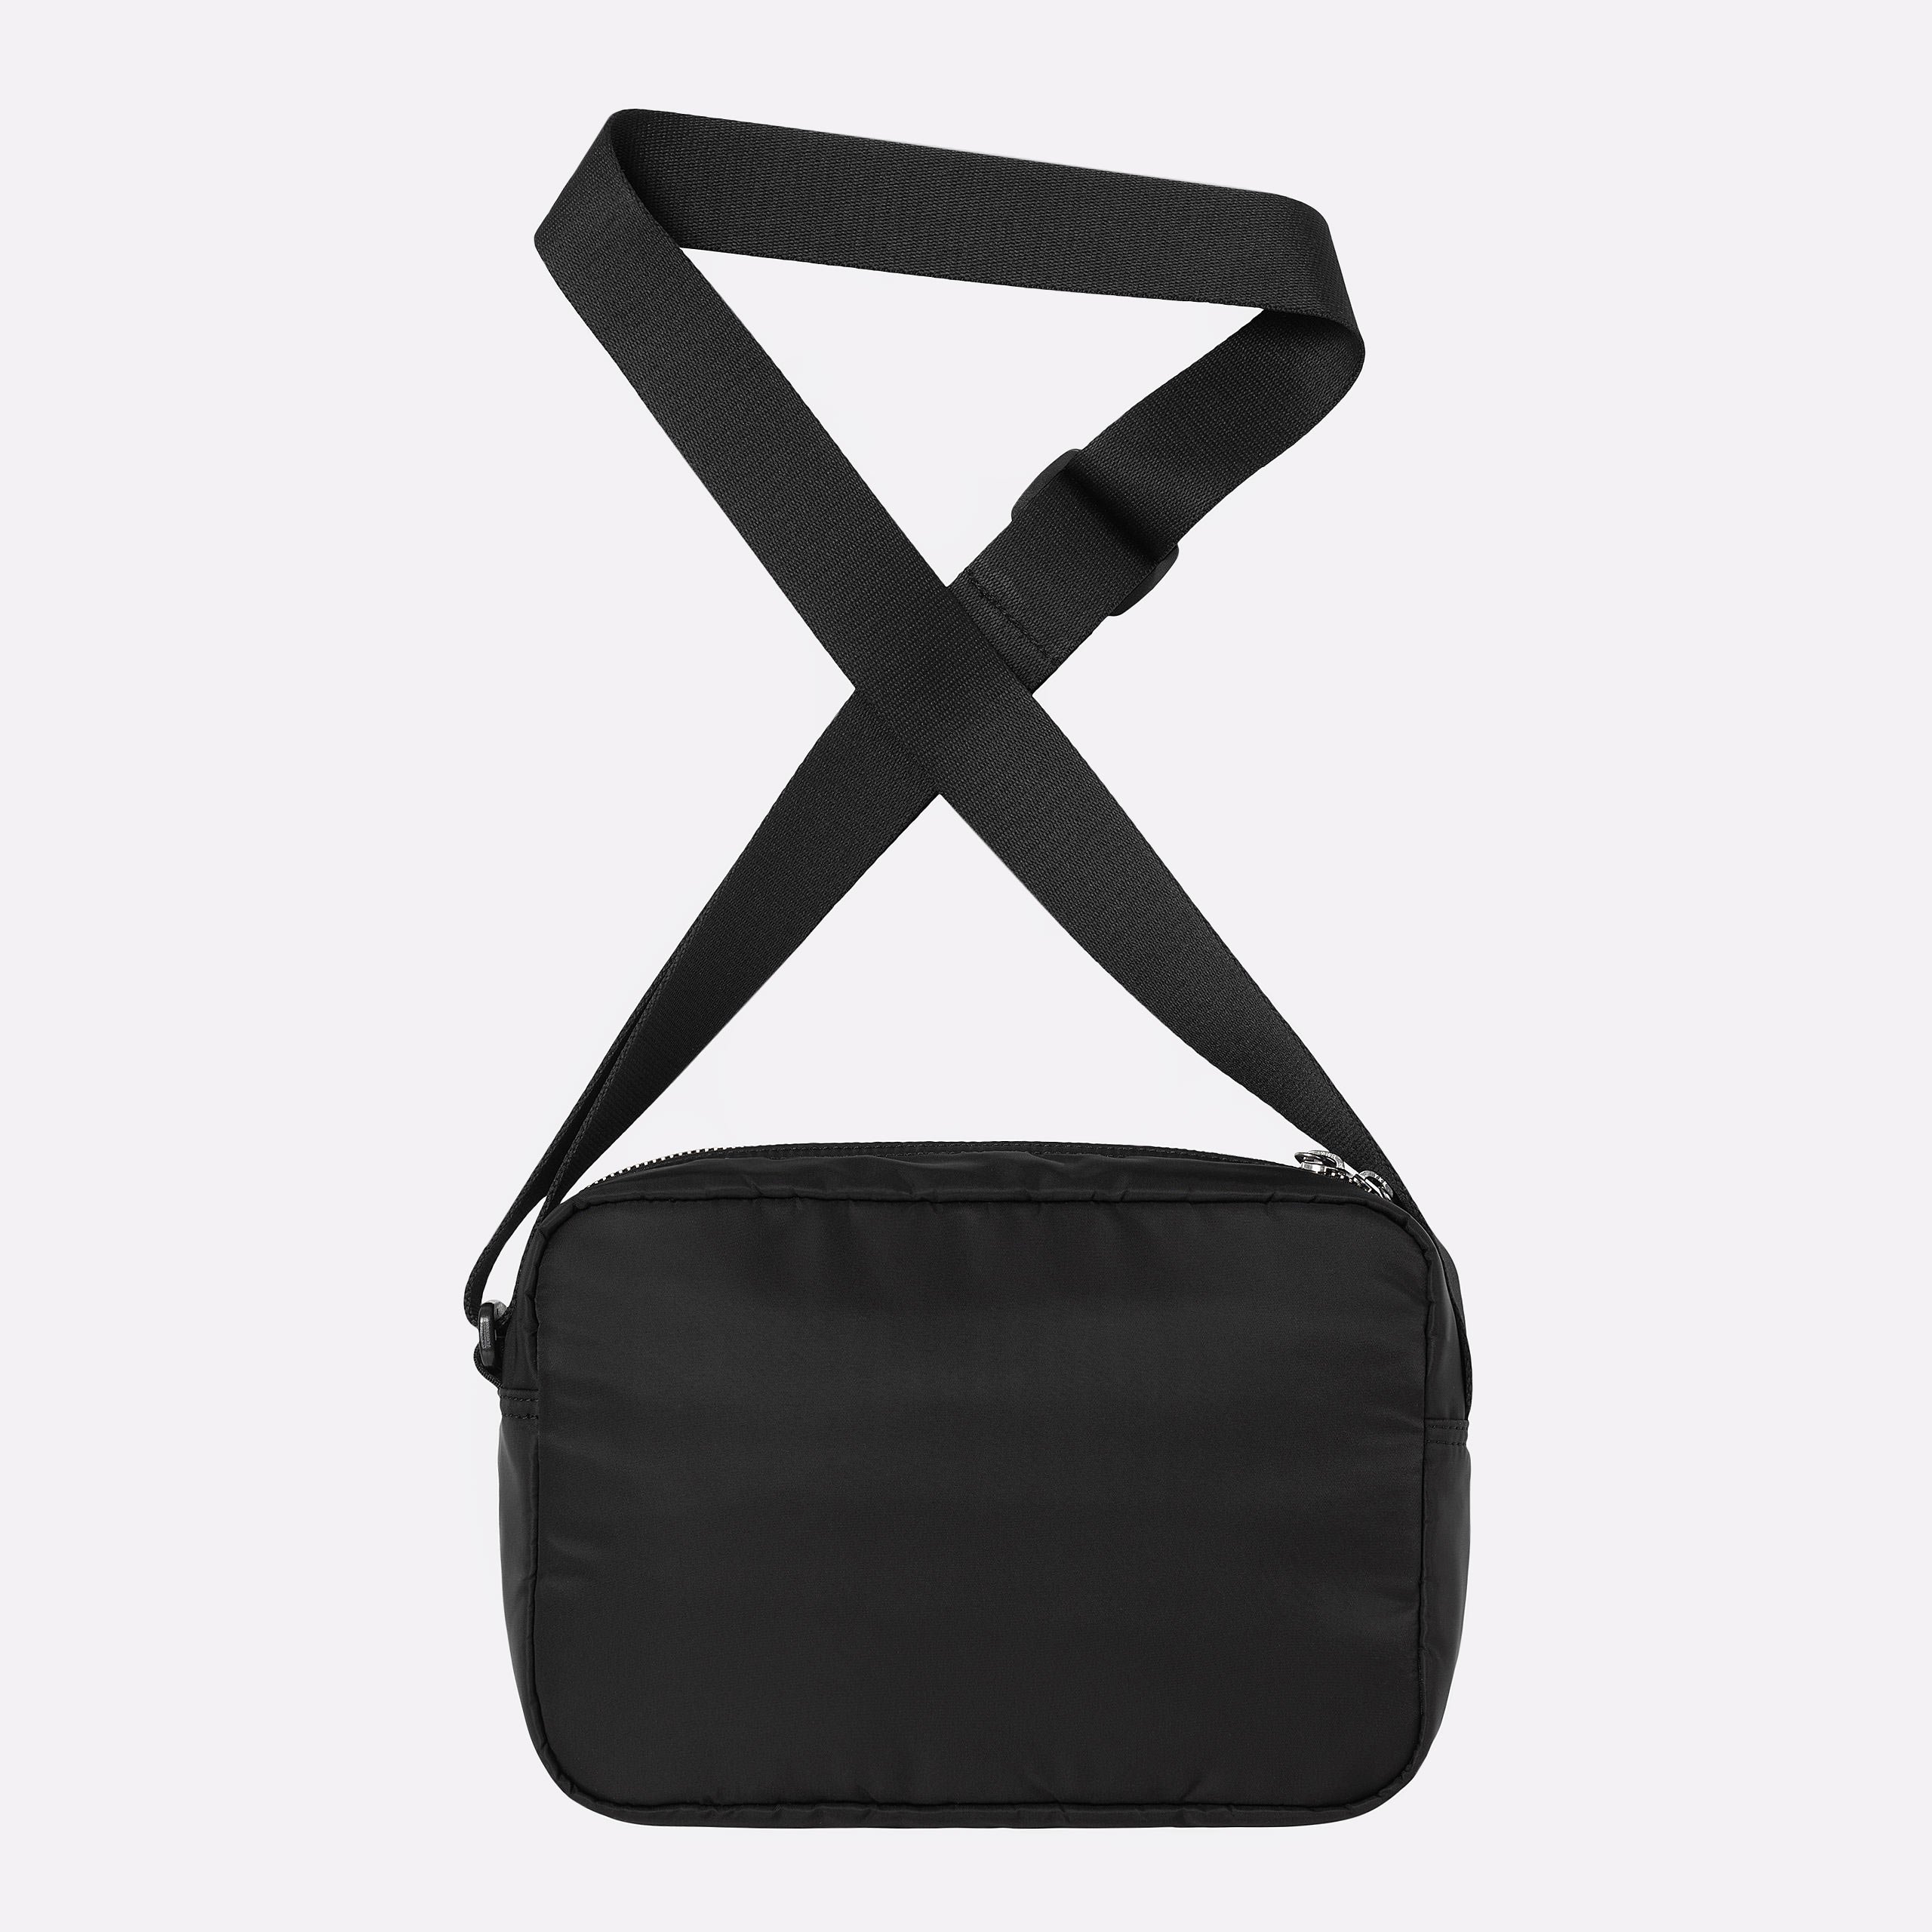  черная сумка Carhartt WIP Otley Shoulder Bag I033097-black - цена, описание, фото 2